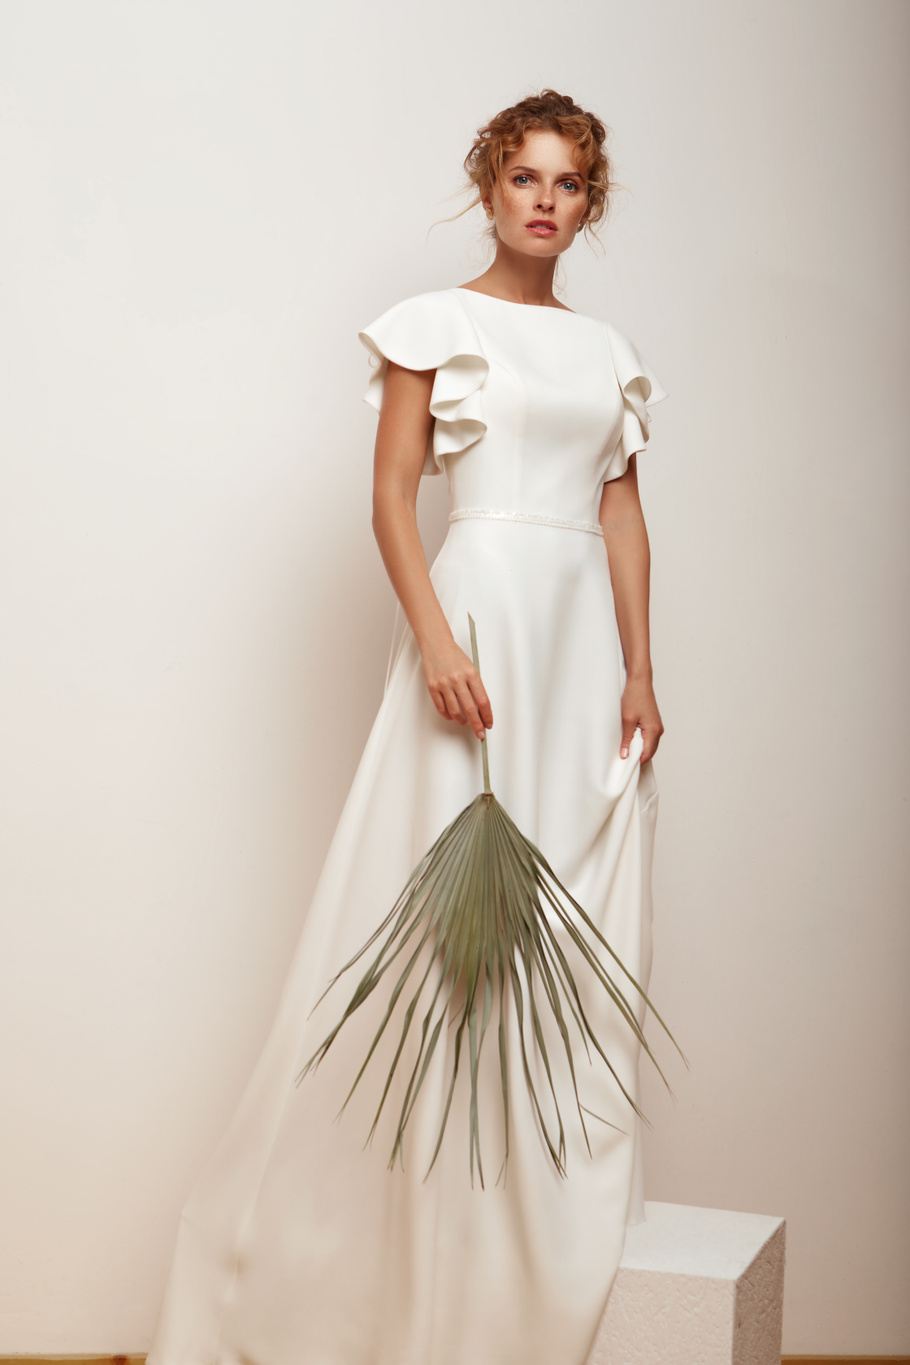 Купить свадебное платье «Ситлин» Мэрри Марк из коллекции 2020 года в Ярославле